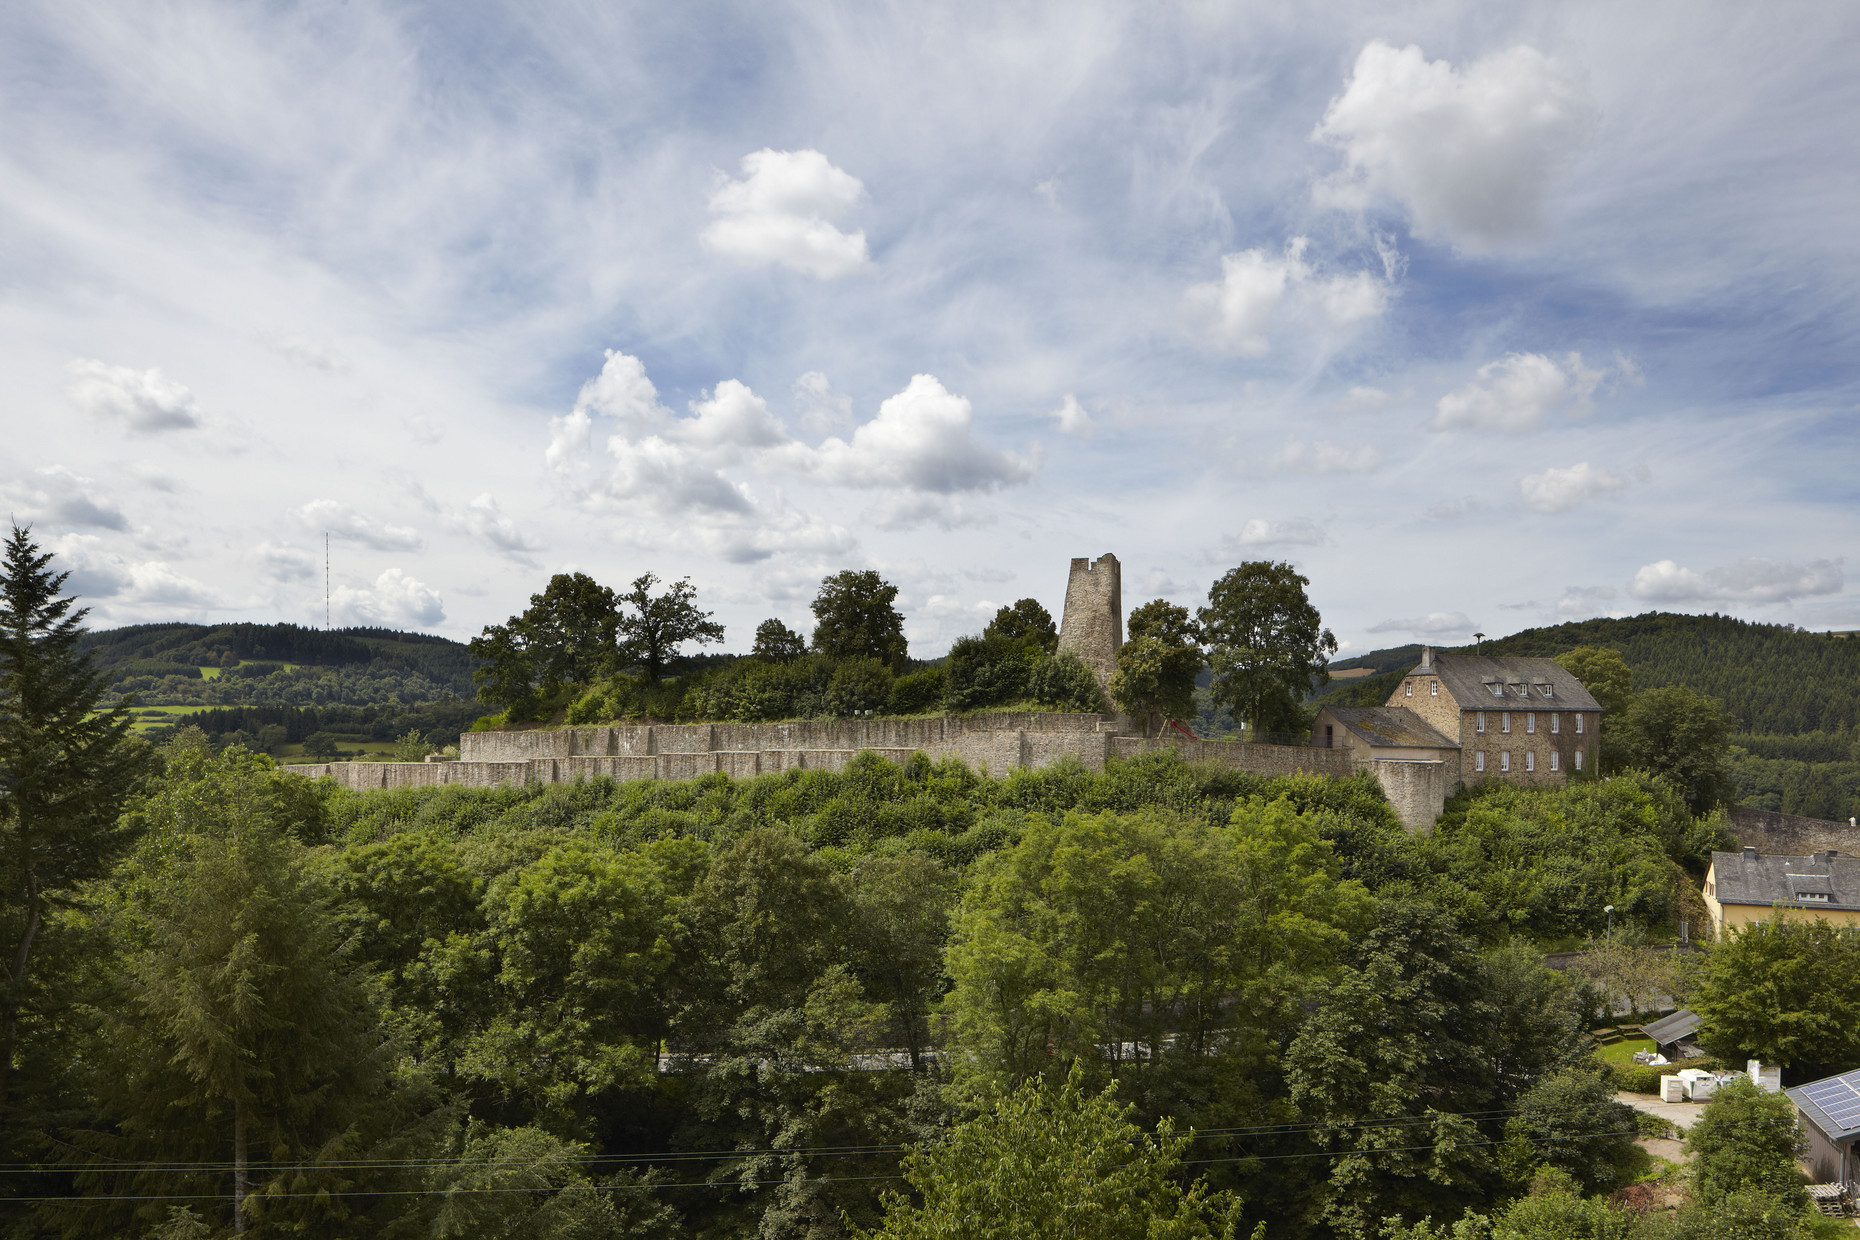 Anhöhe mit Bergfried, Teilen einer Umfassungsmauer und Häusern, bewaldete Hügel im Hintergrund